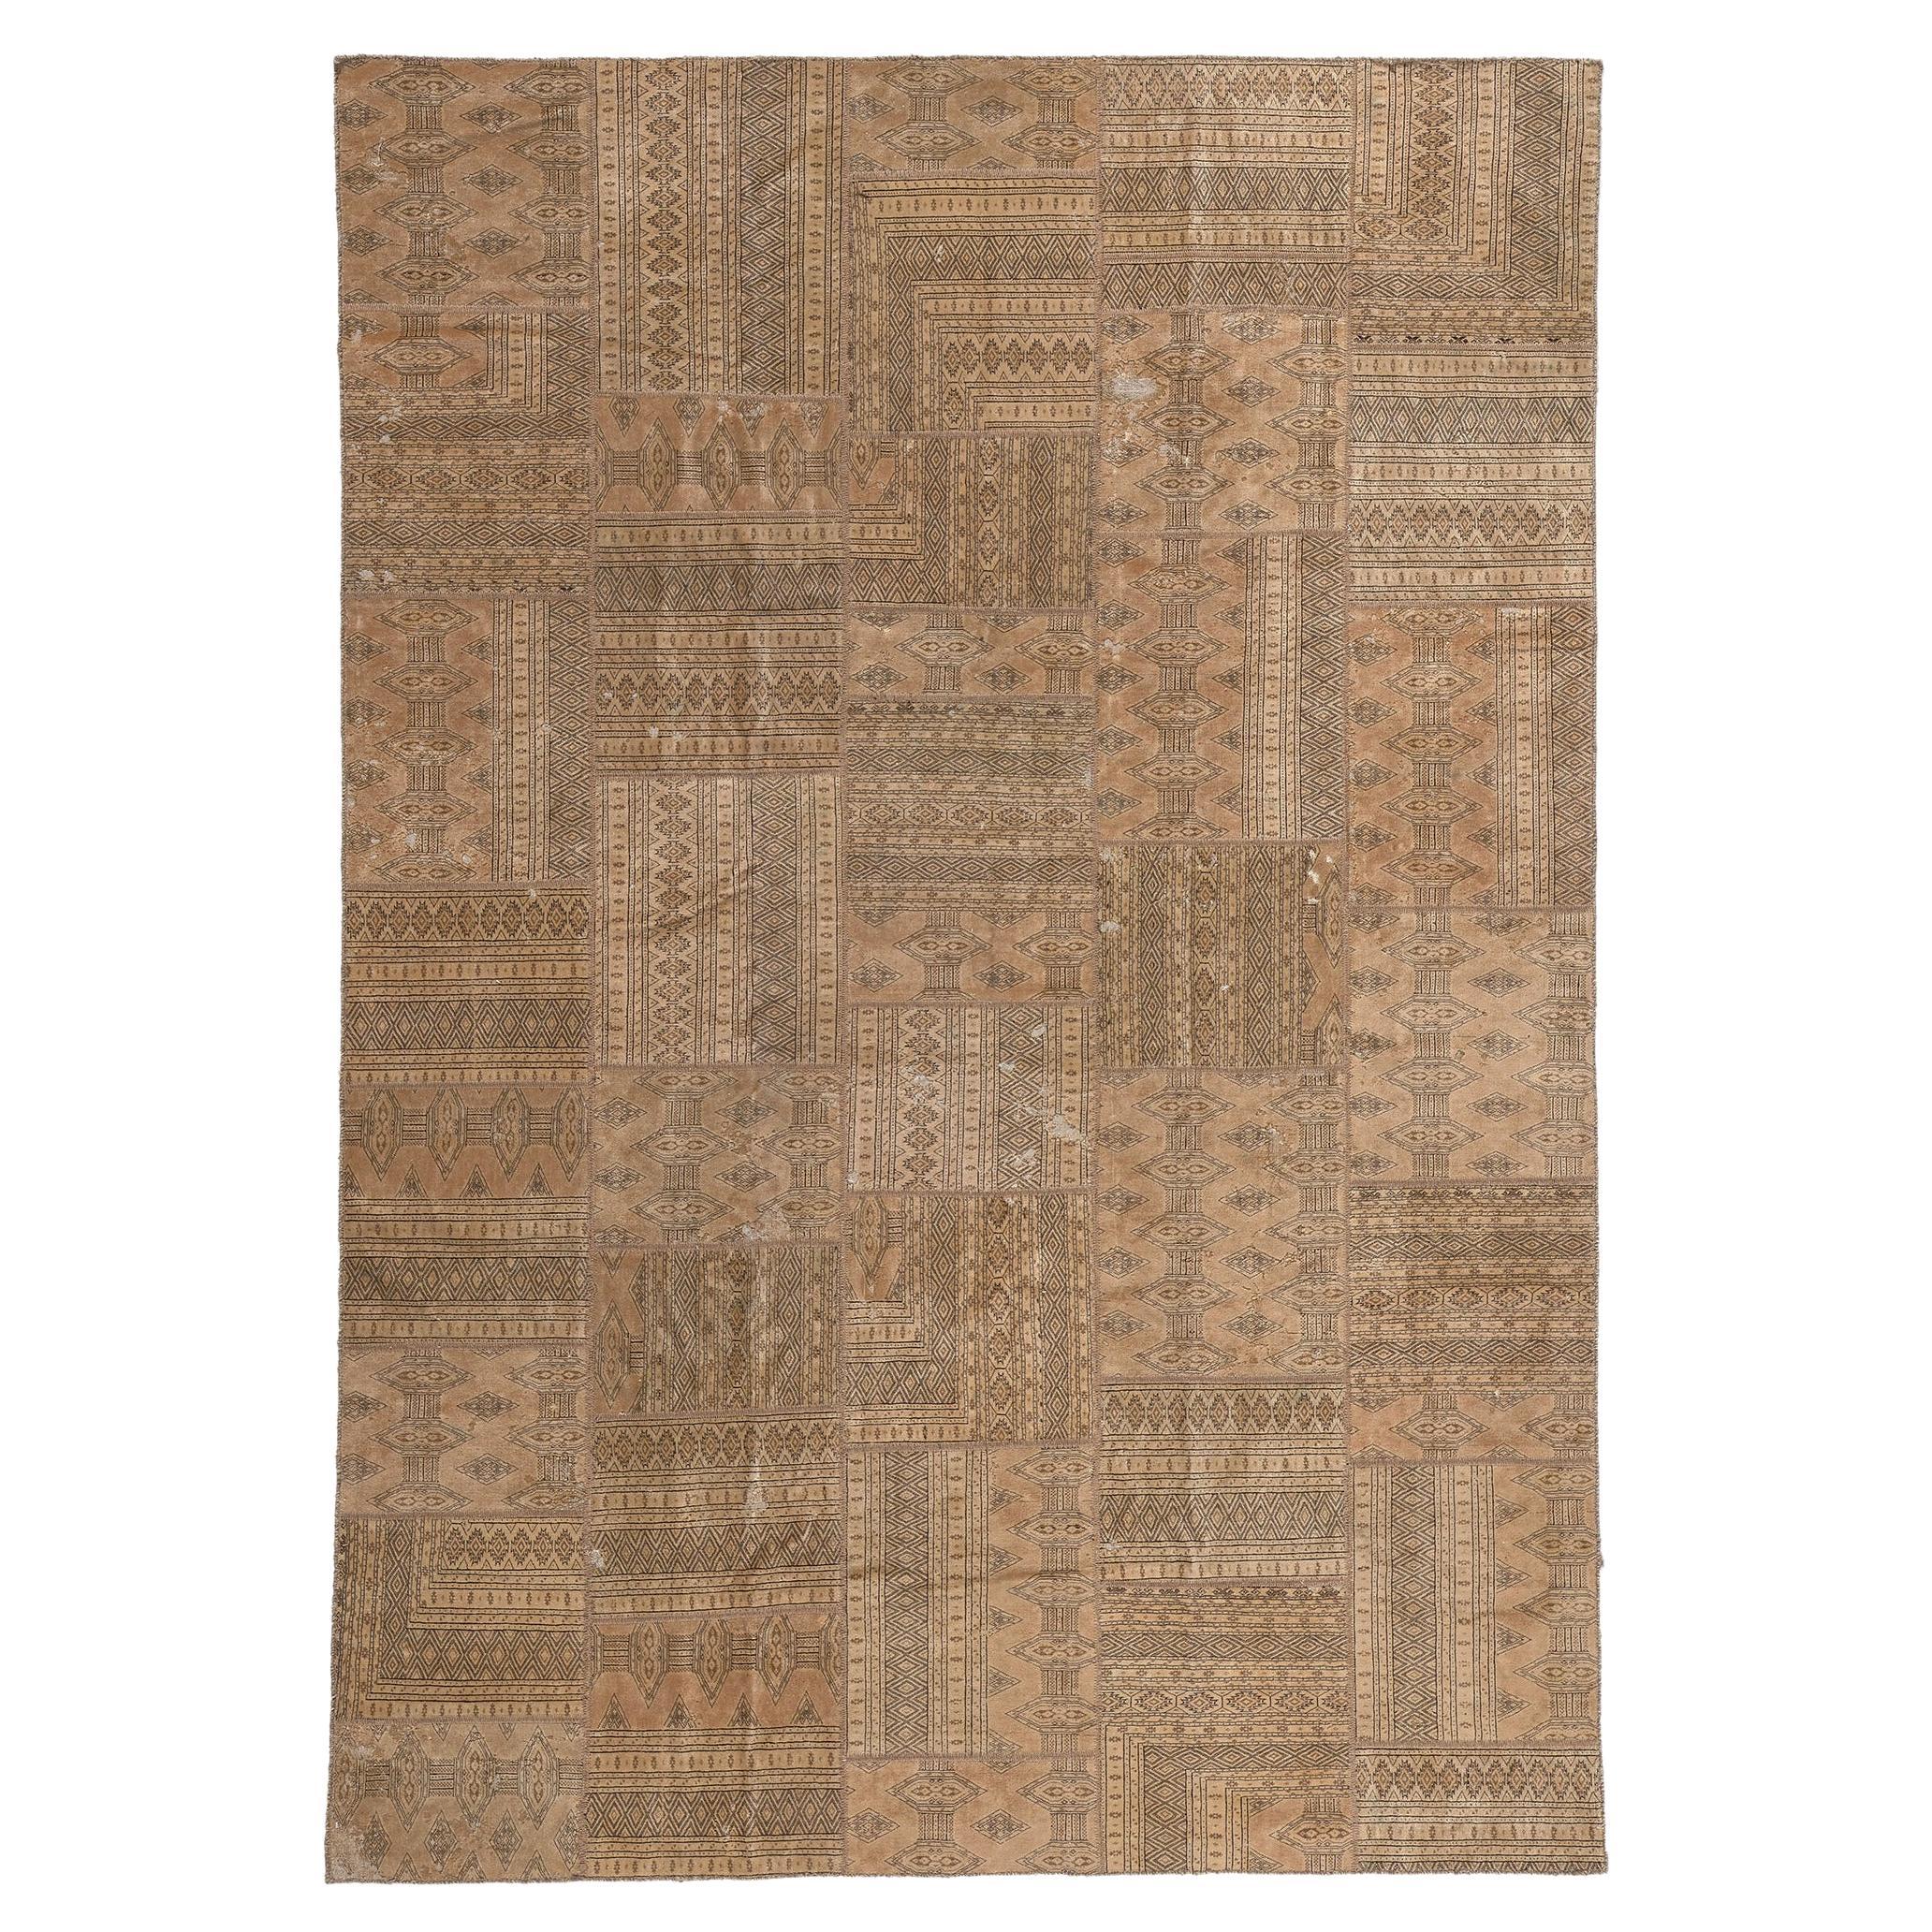 Tapis patchwork vintage neutre, rustique et raffiné, en laine et soie, de style Turkoman